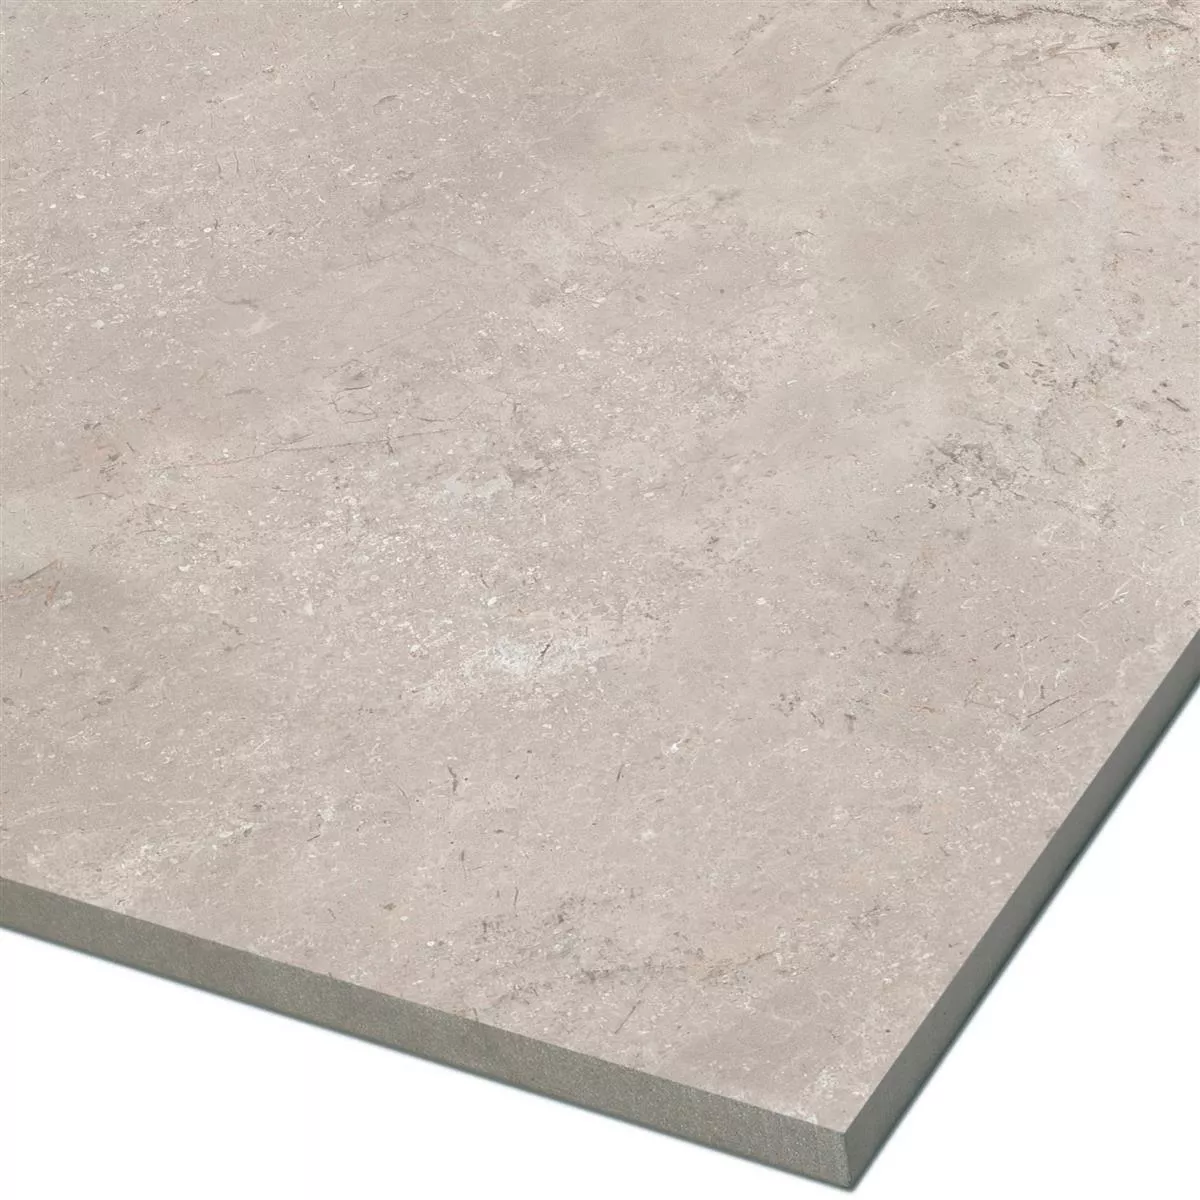 Sample Floor Tiles Pangea Marble Optic Mat Beige 60x60cm